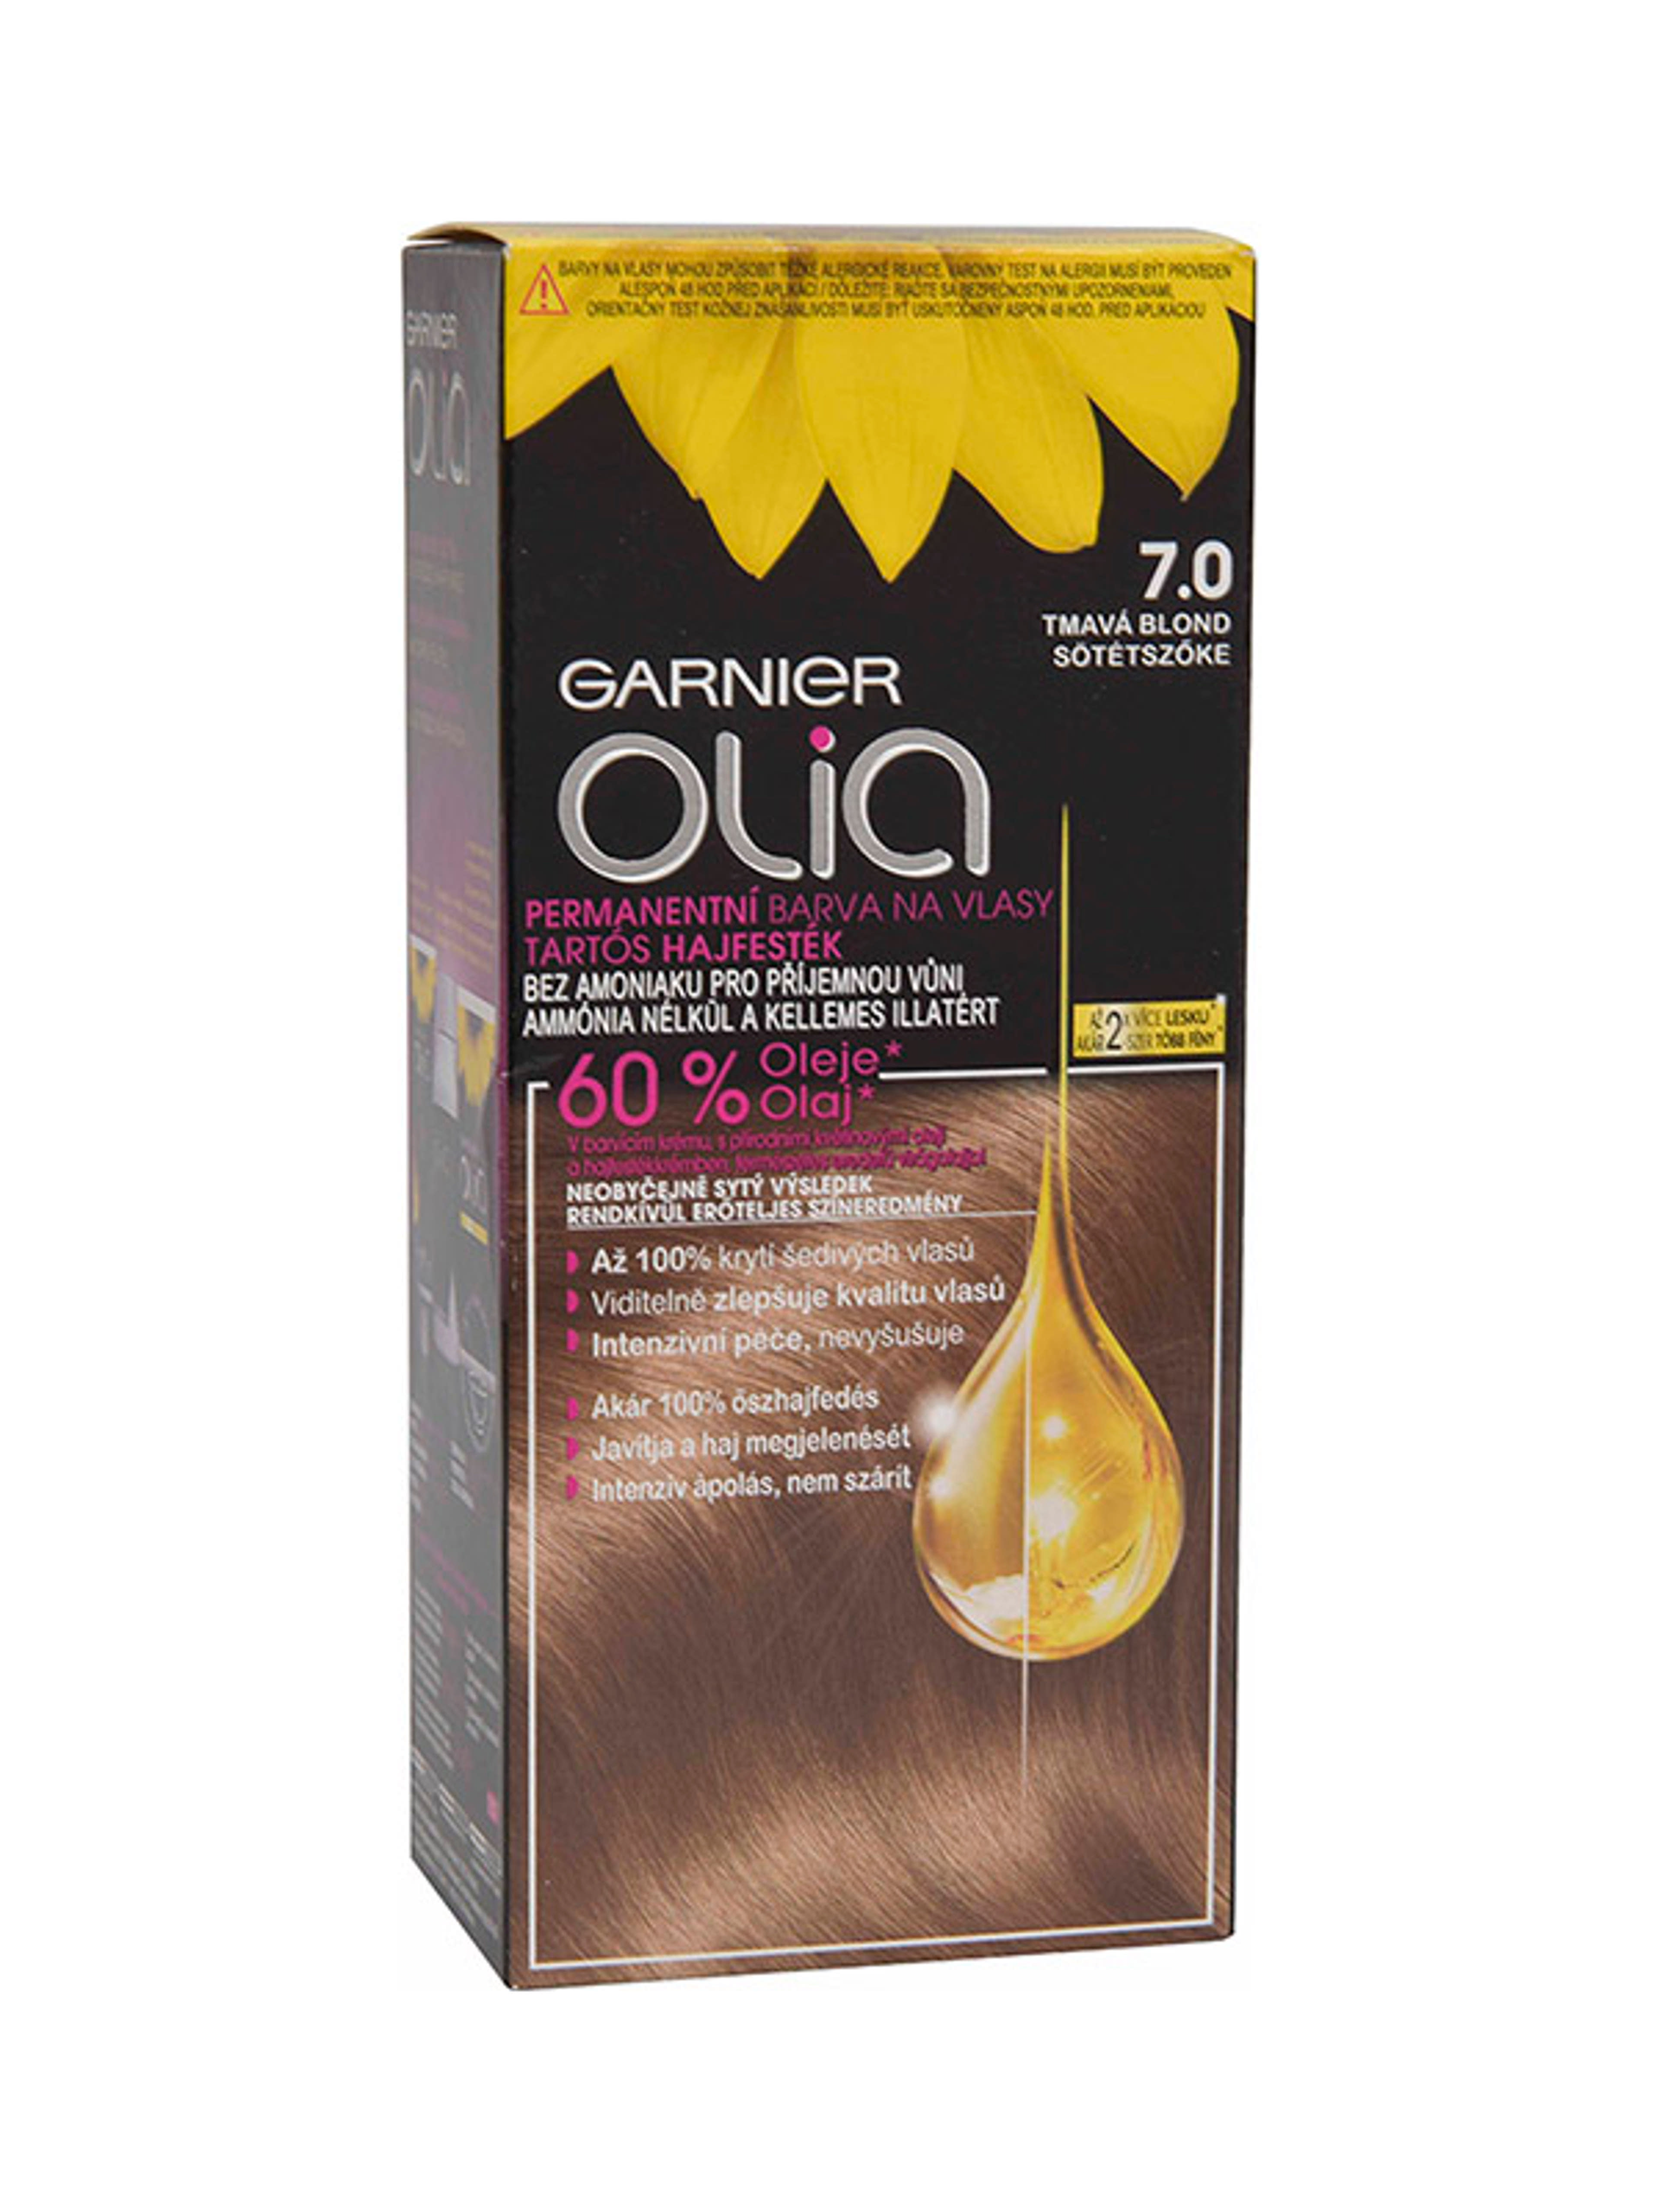 Garnier Olia tartós hajfesték 7.0 Sötétszőke - 1 db-1